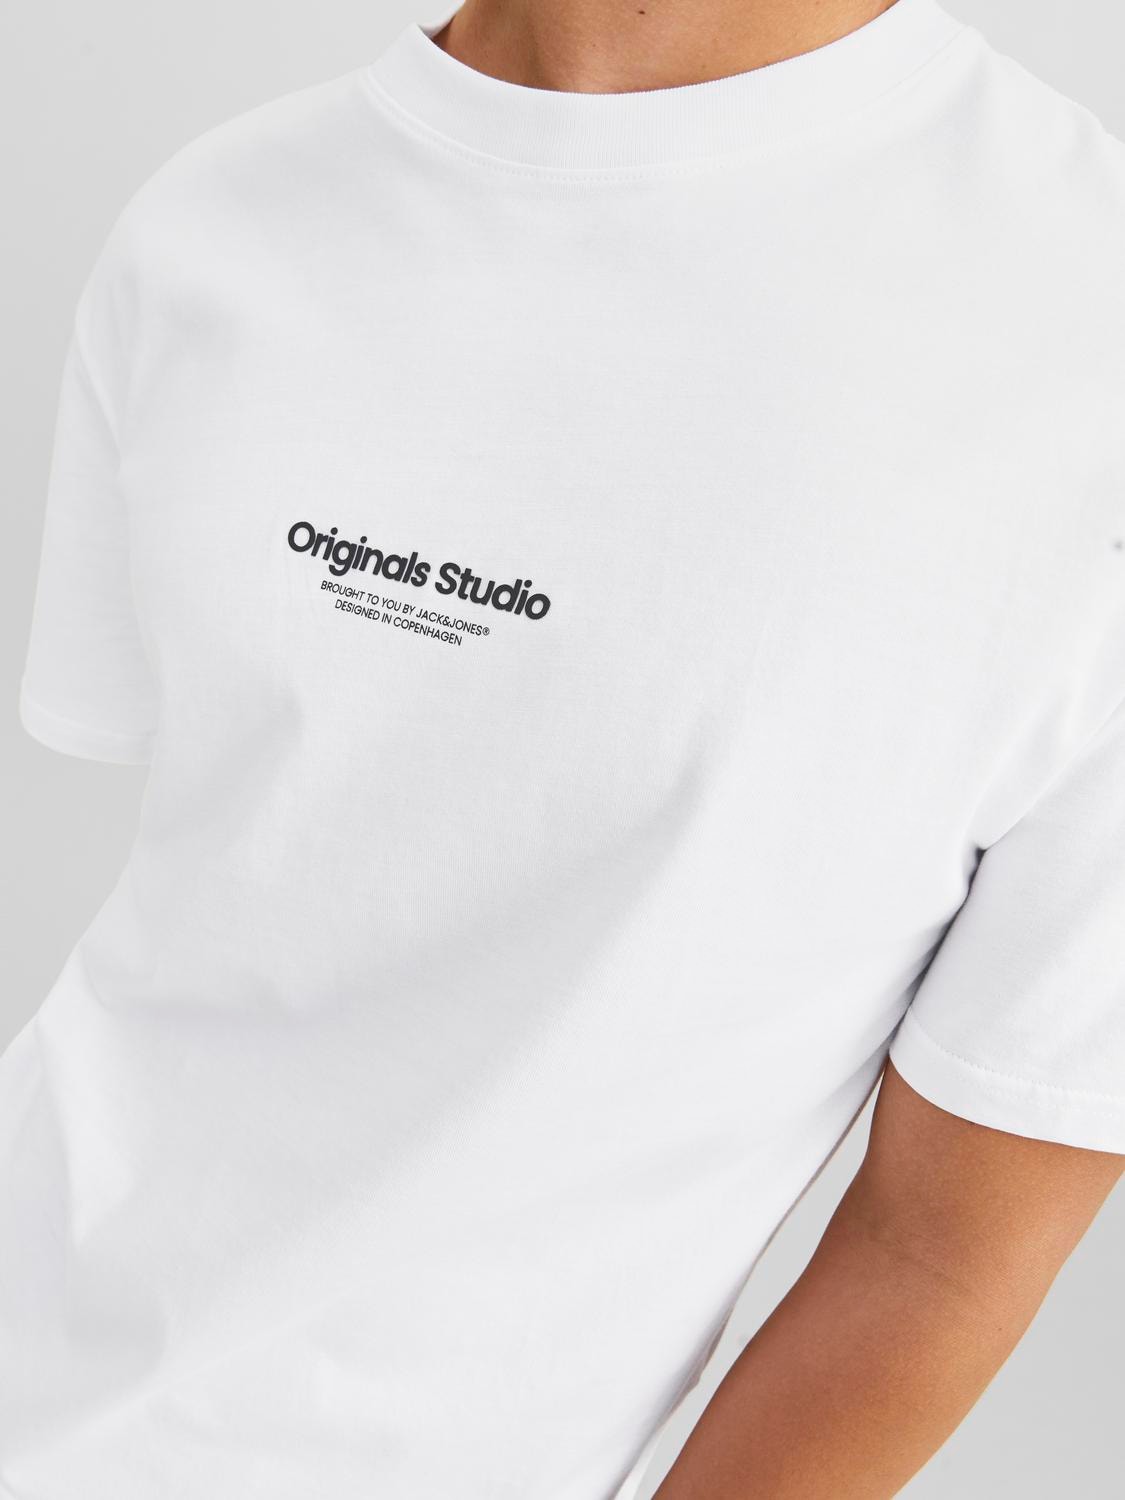 Jack & Jones T-shirt Imprimé Col rond -Bright White - 12240121